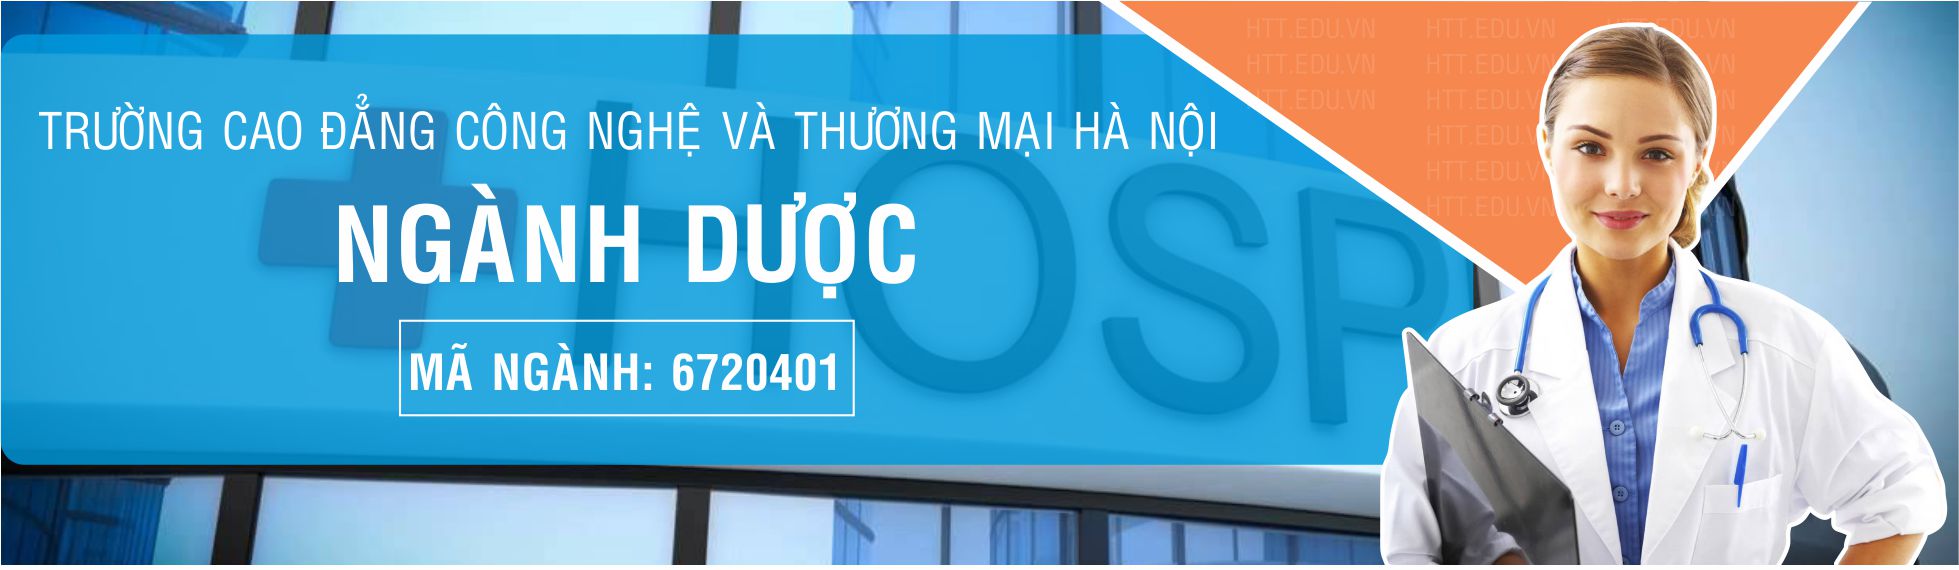 cao-dang-duoc-ha-noi-htt.edu.vn-2